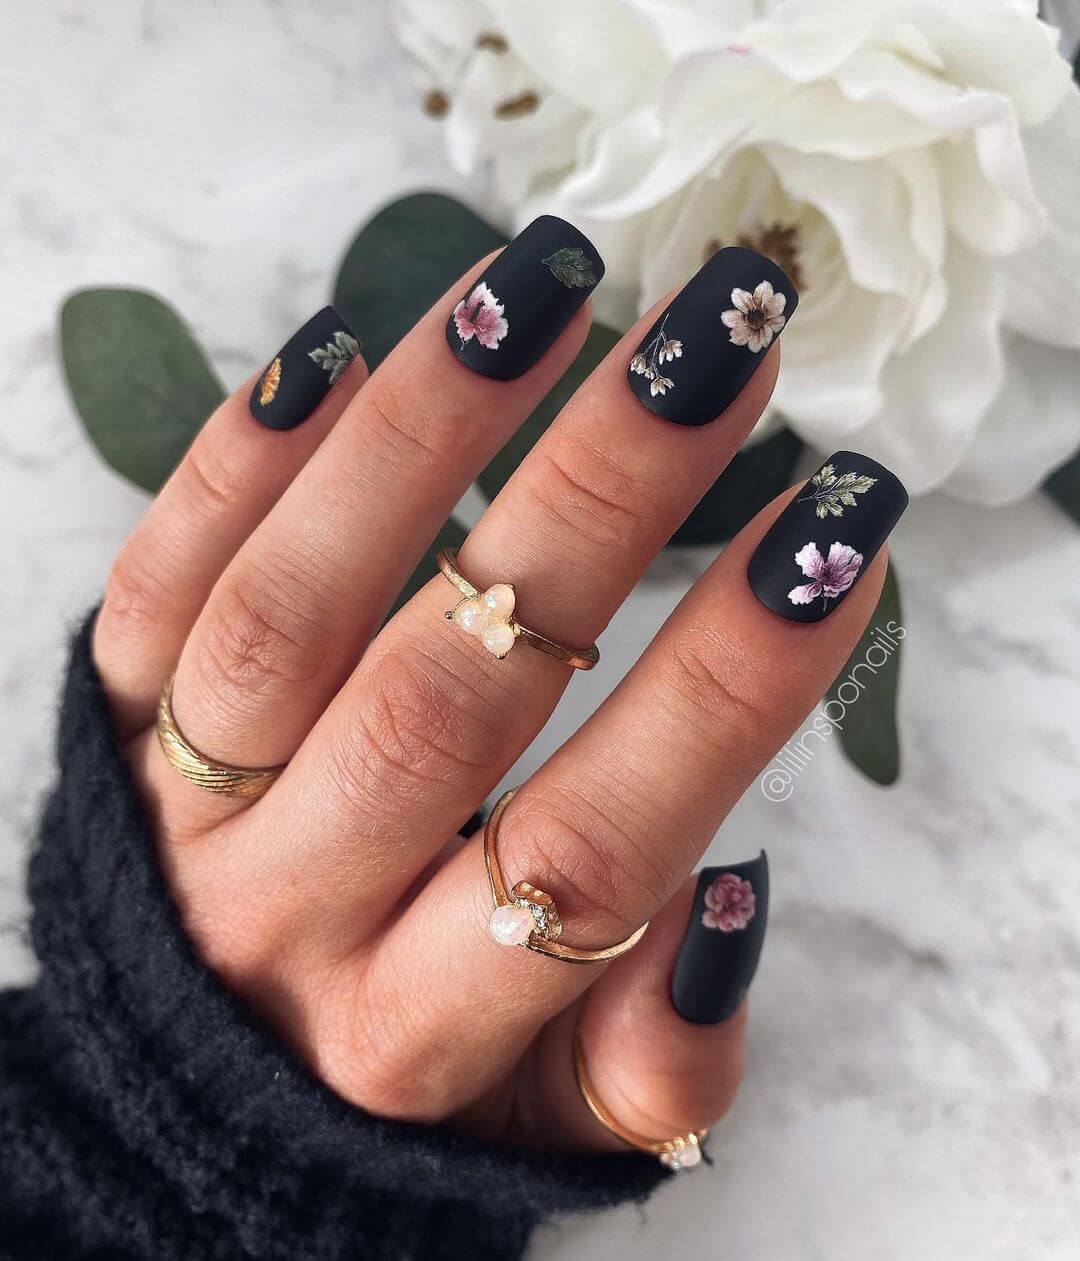 The Matte Black Floral Nails